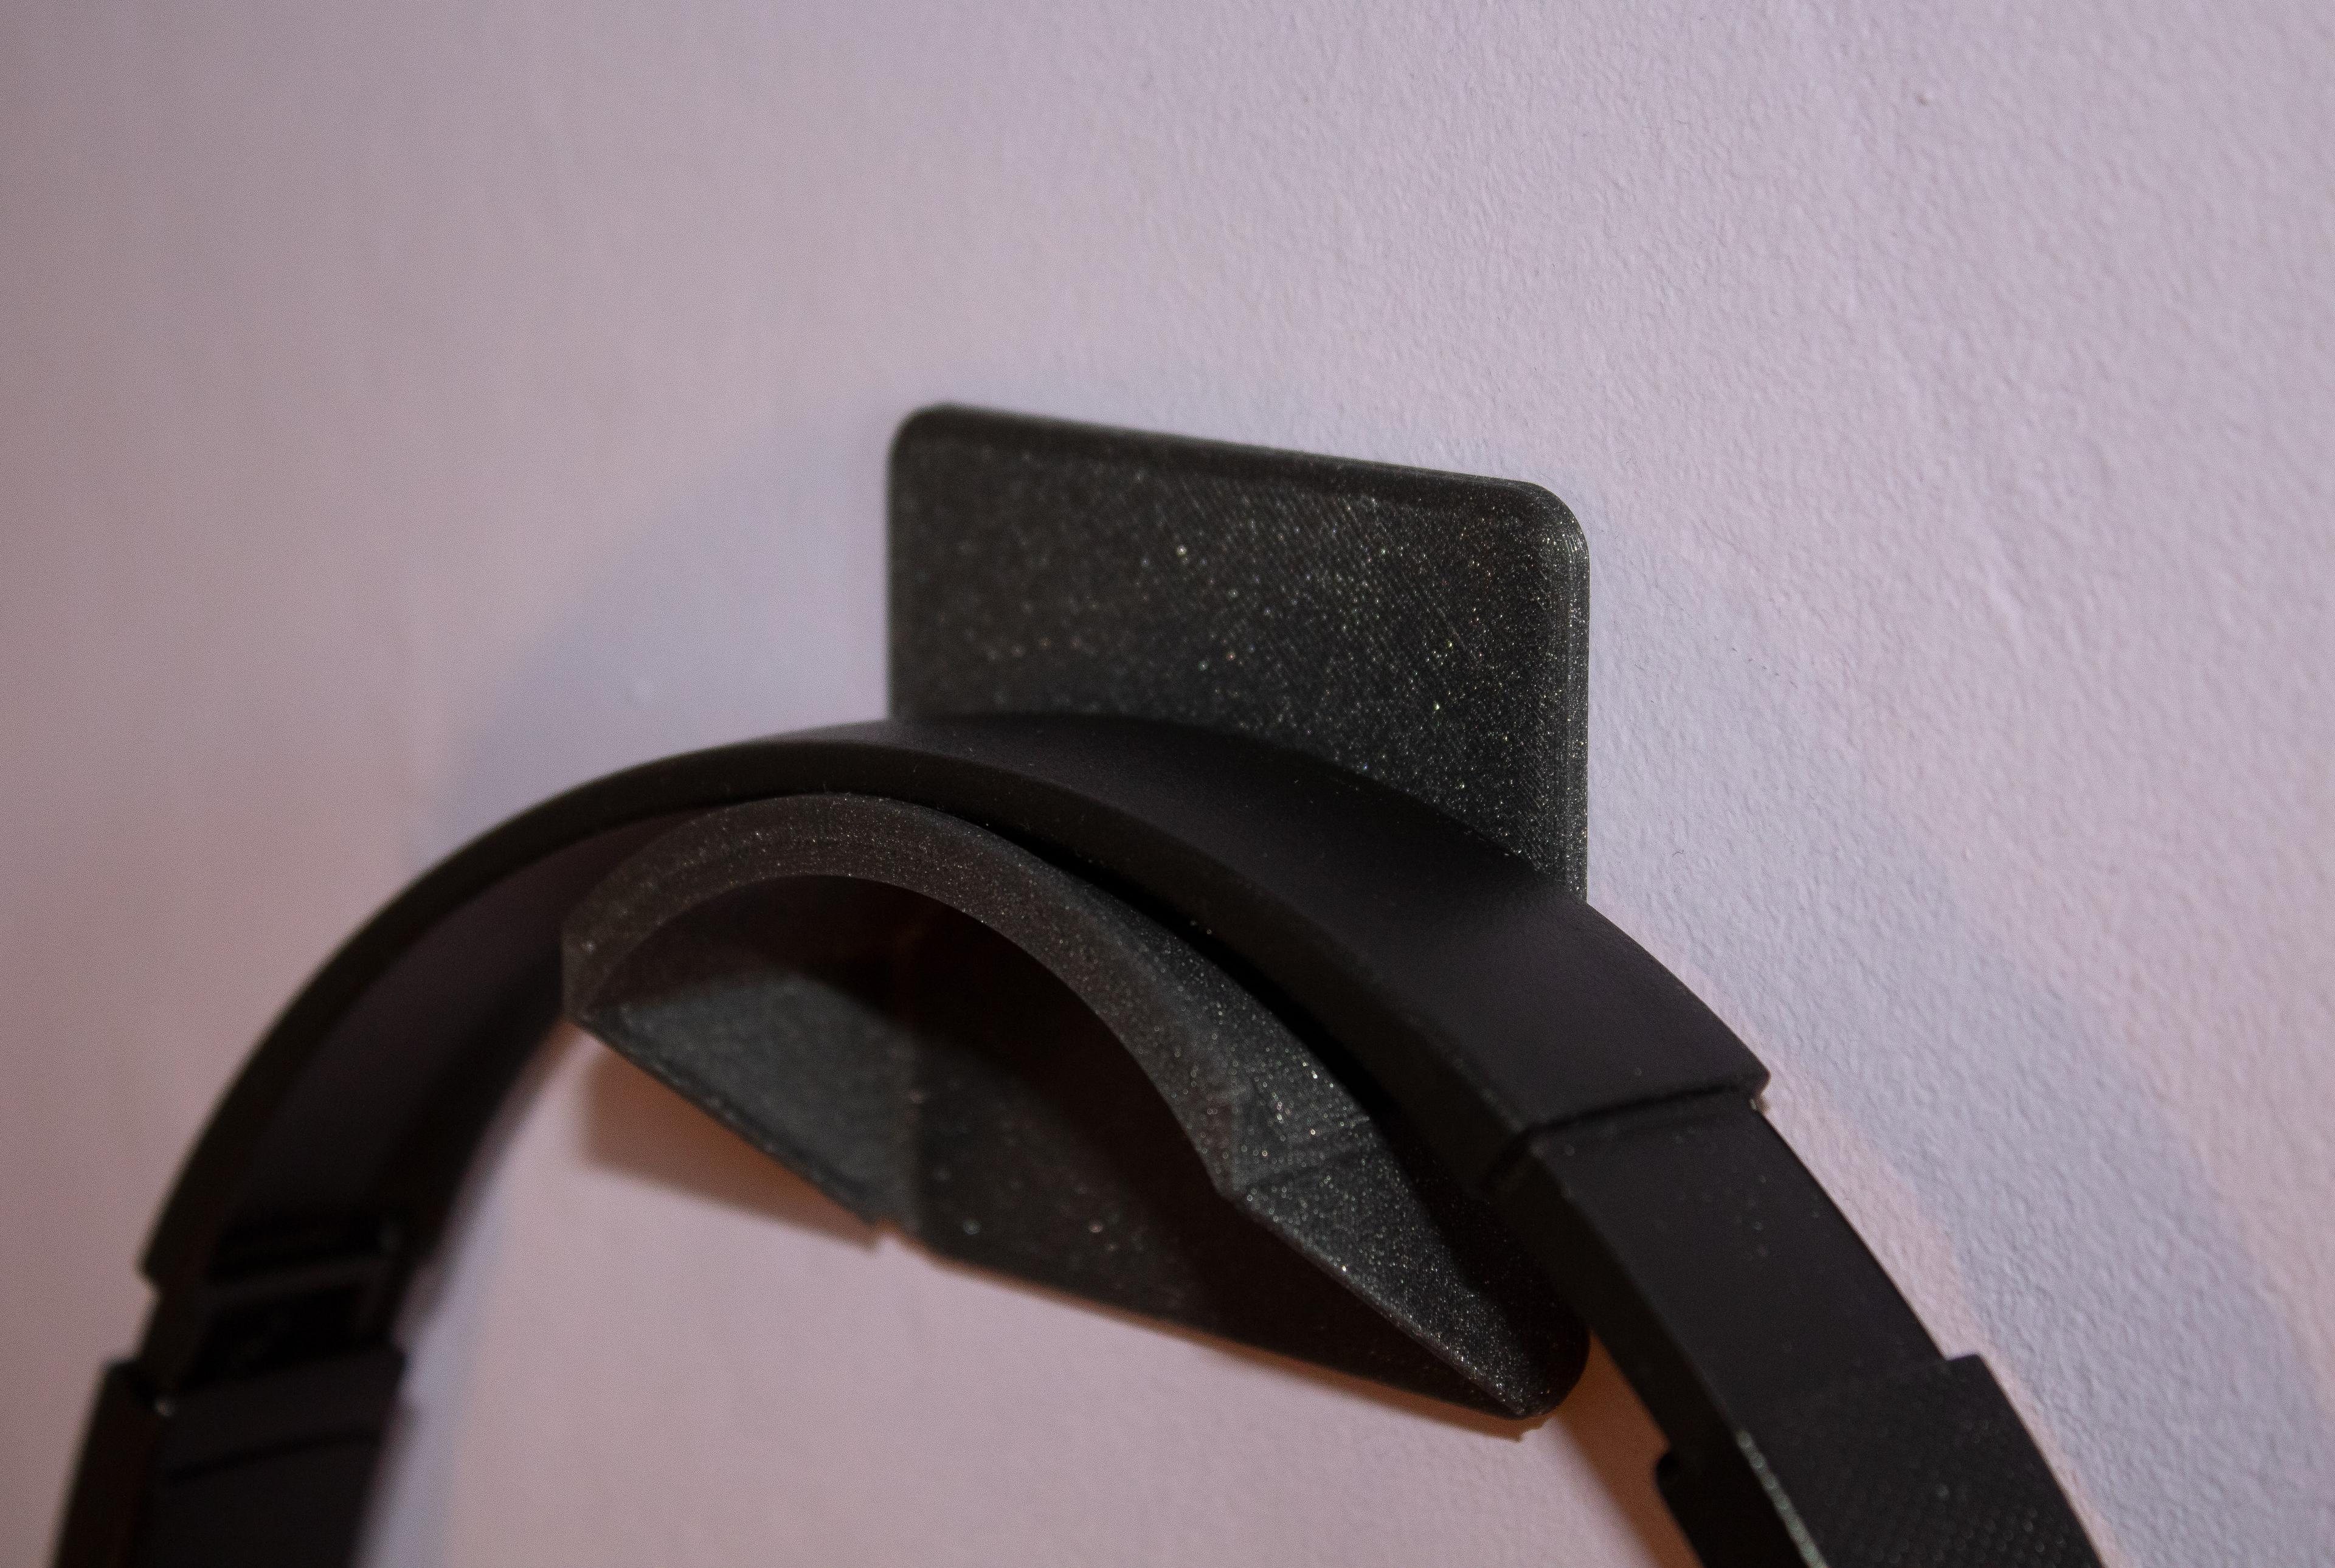 Headphones wall hanger 3d model